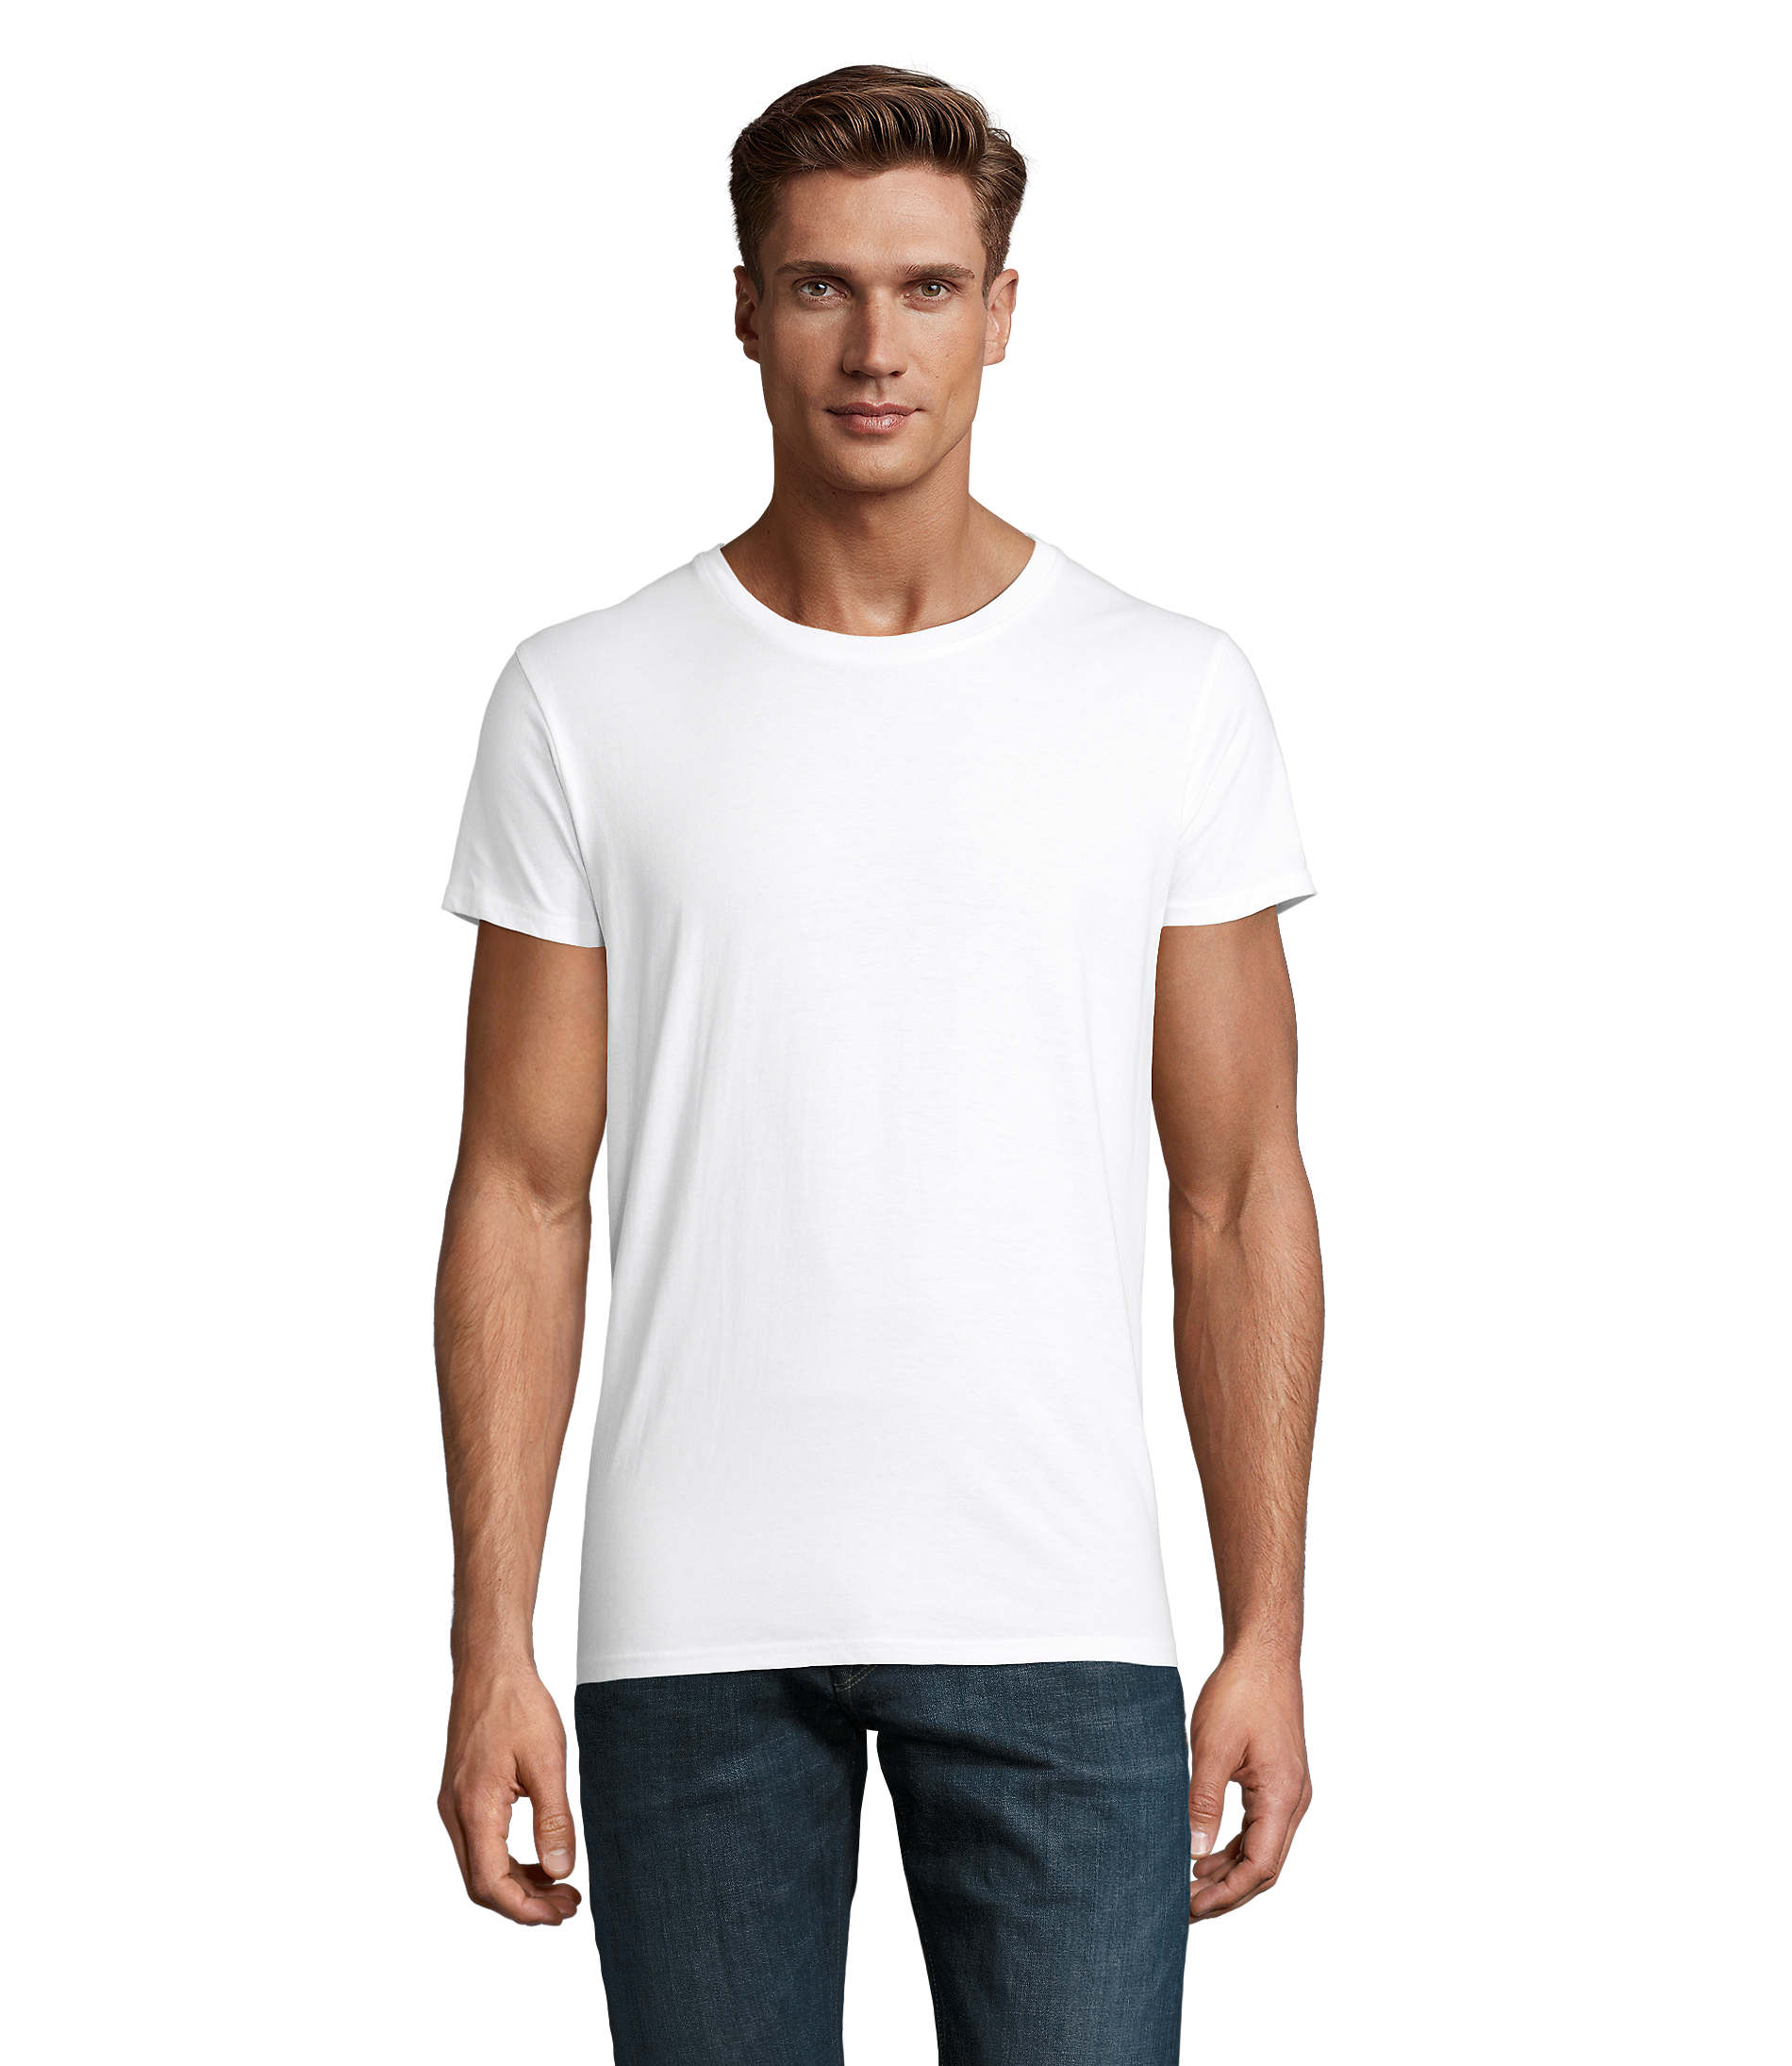 https://www.ventdouestimpression.fr/wp-content/uploads/2021/02/T-Shirt-manches-courtes-BIO-Homme-Cruisader-Blanc-1.jpg